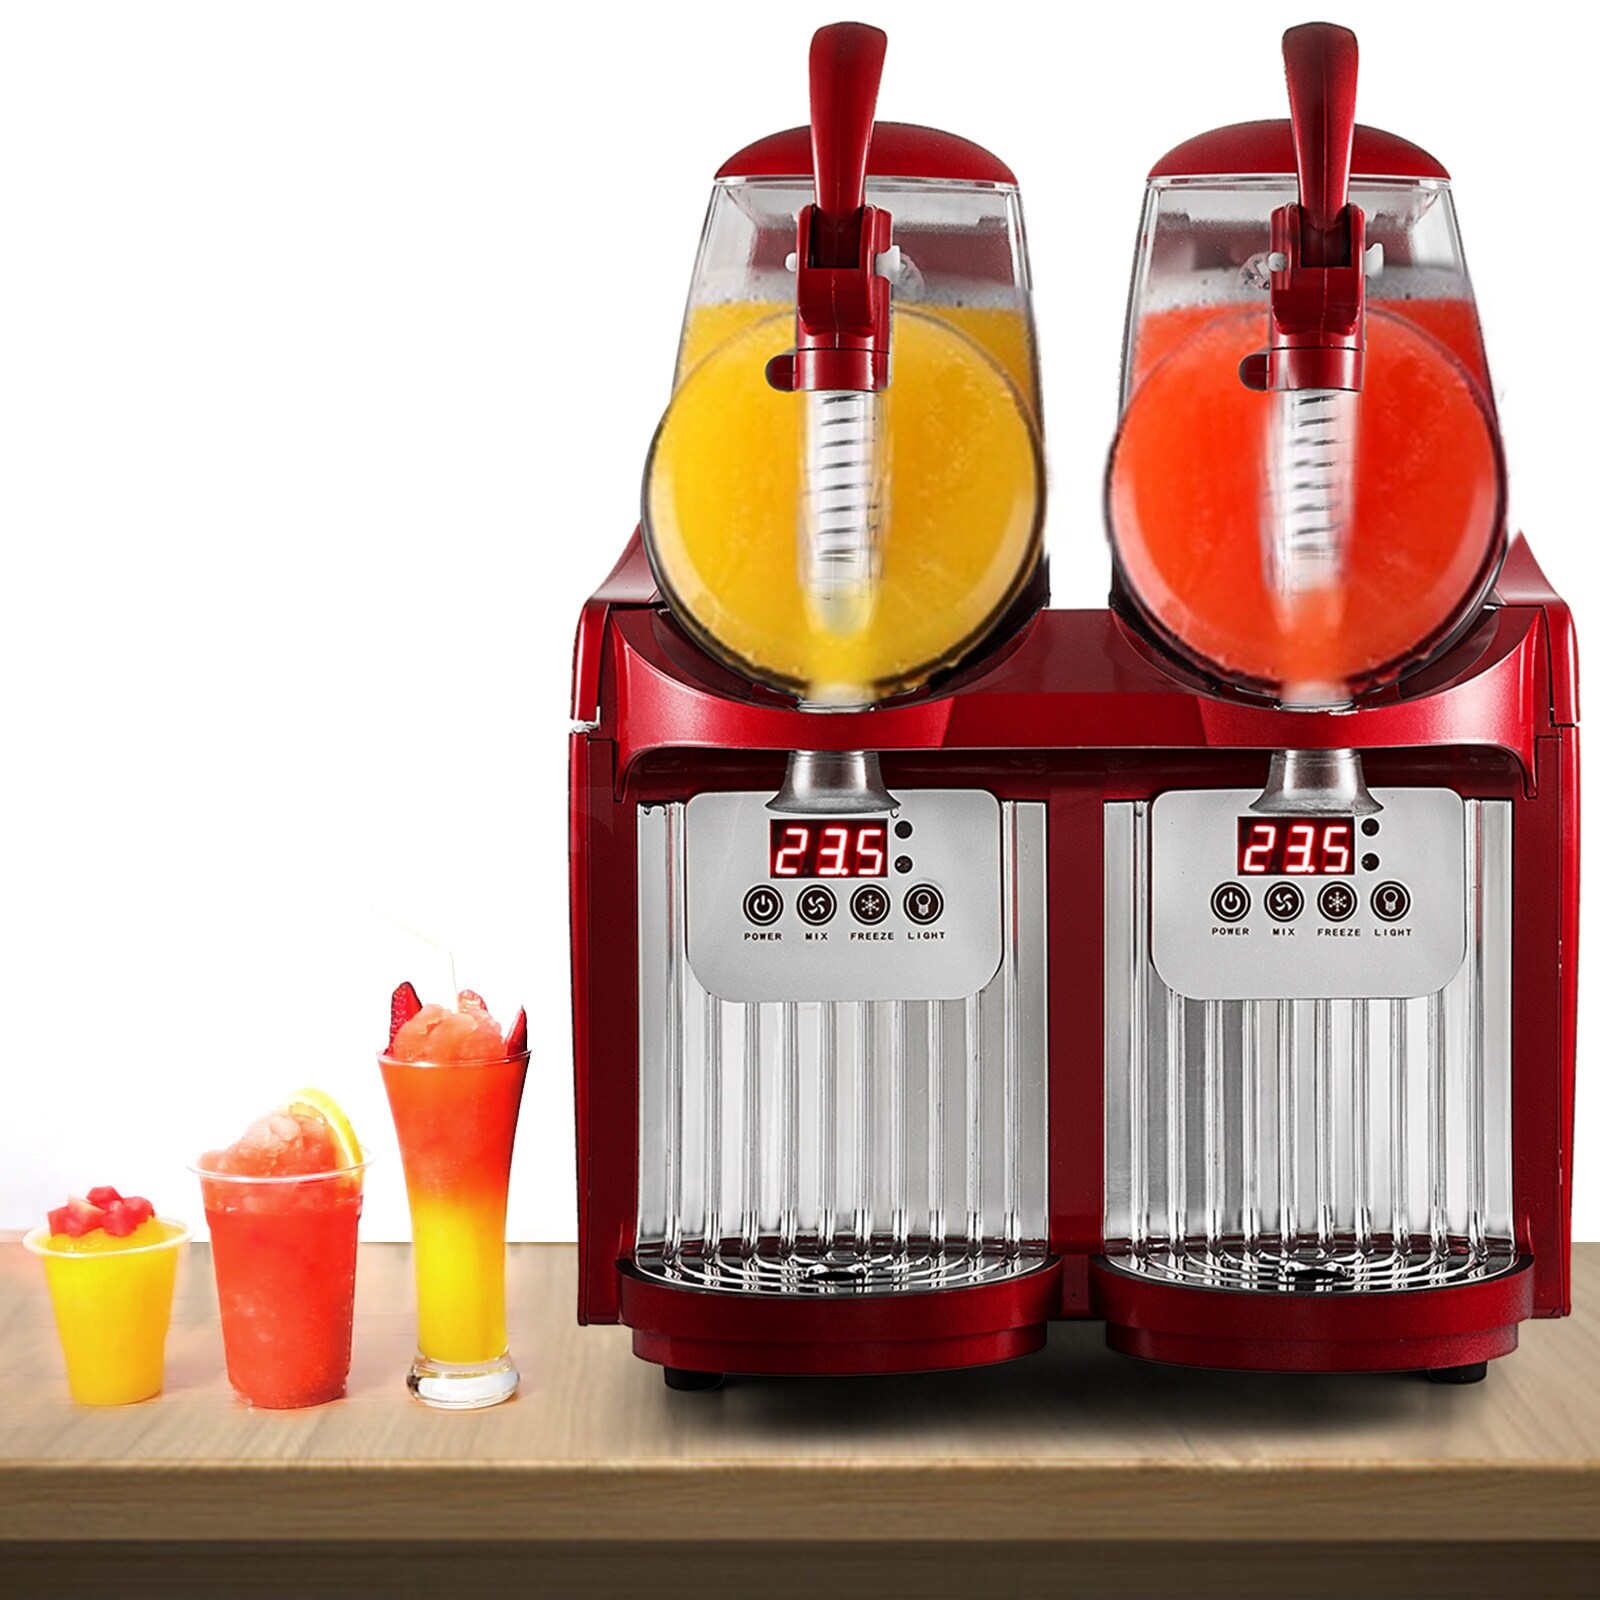 Orvisinc Mini Slush Making Machine Juice Smoothie Maker Frozen